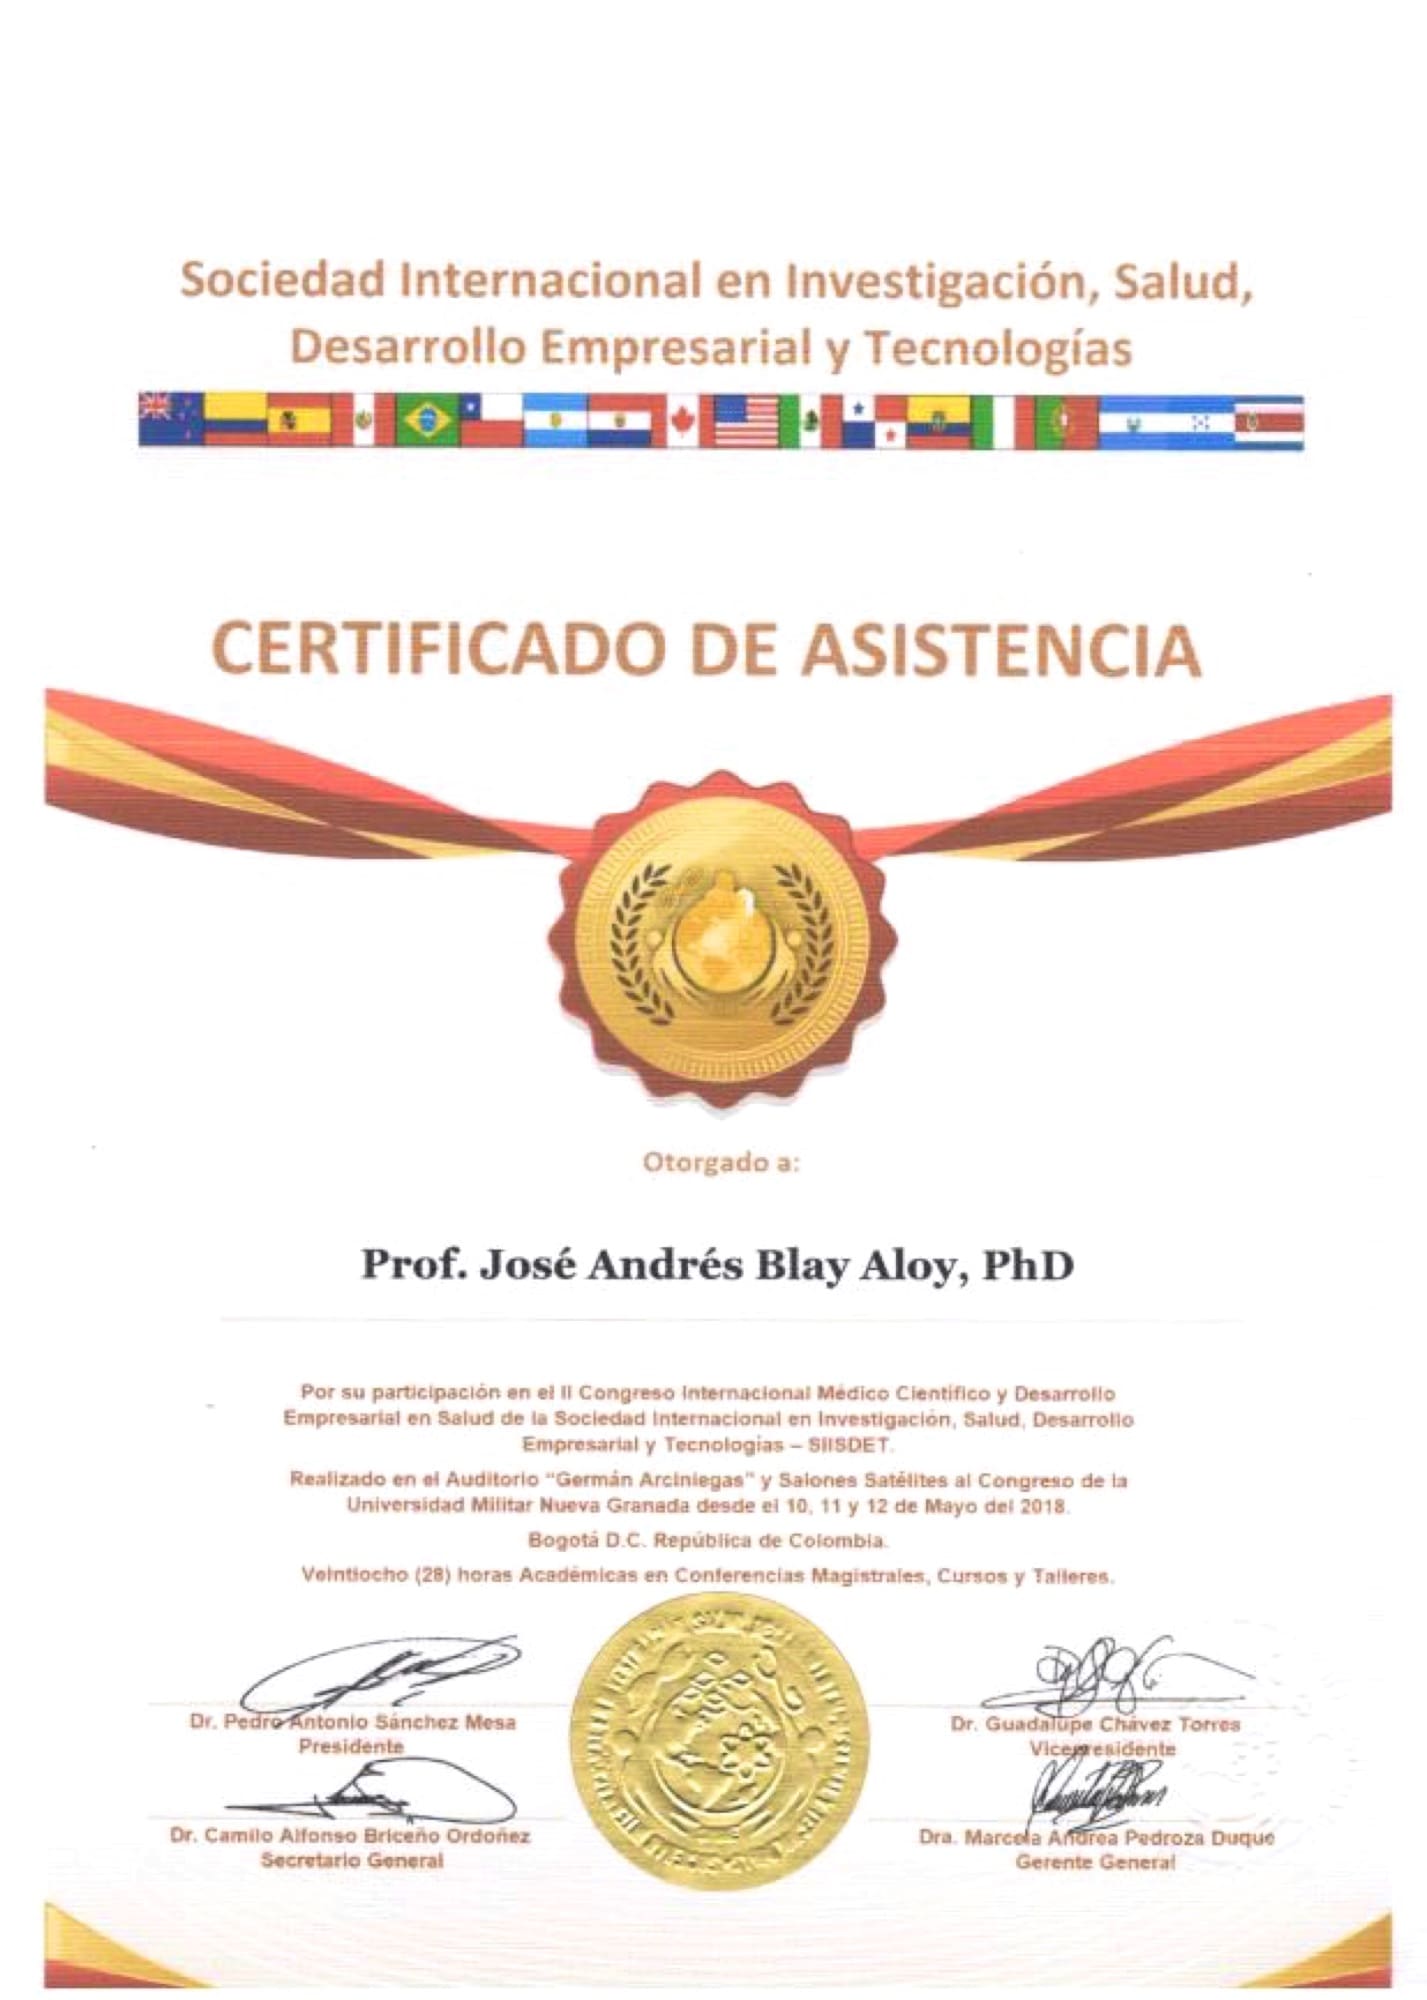 Certificado Asistencia II Congreso Internacional Médico Científico y Desarrollo Empresarial SIISDET Jose Andres Blay Aloy